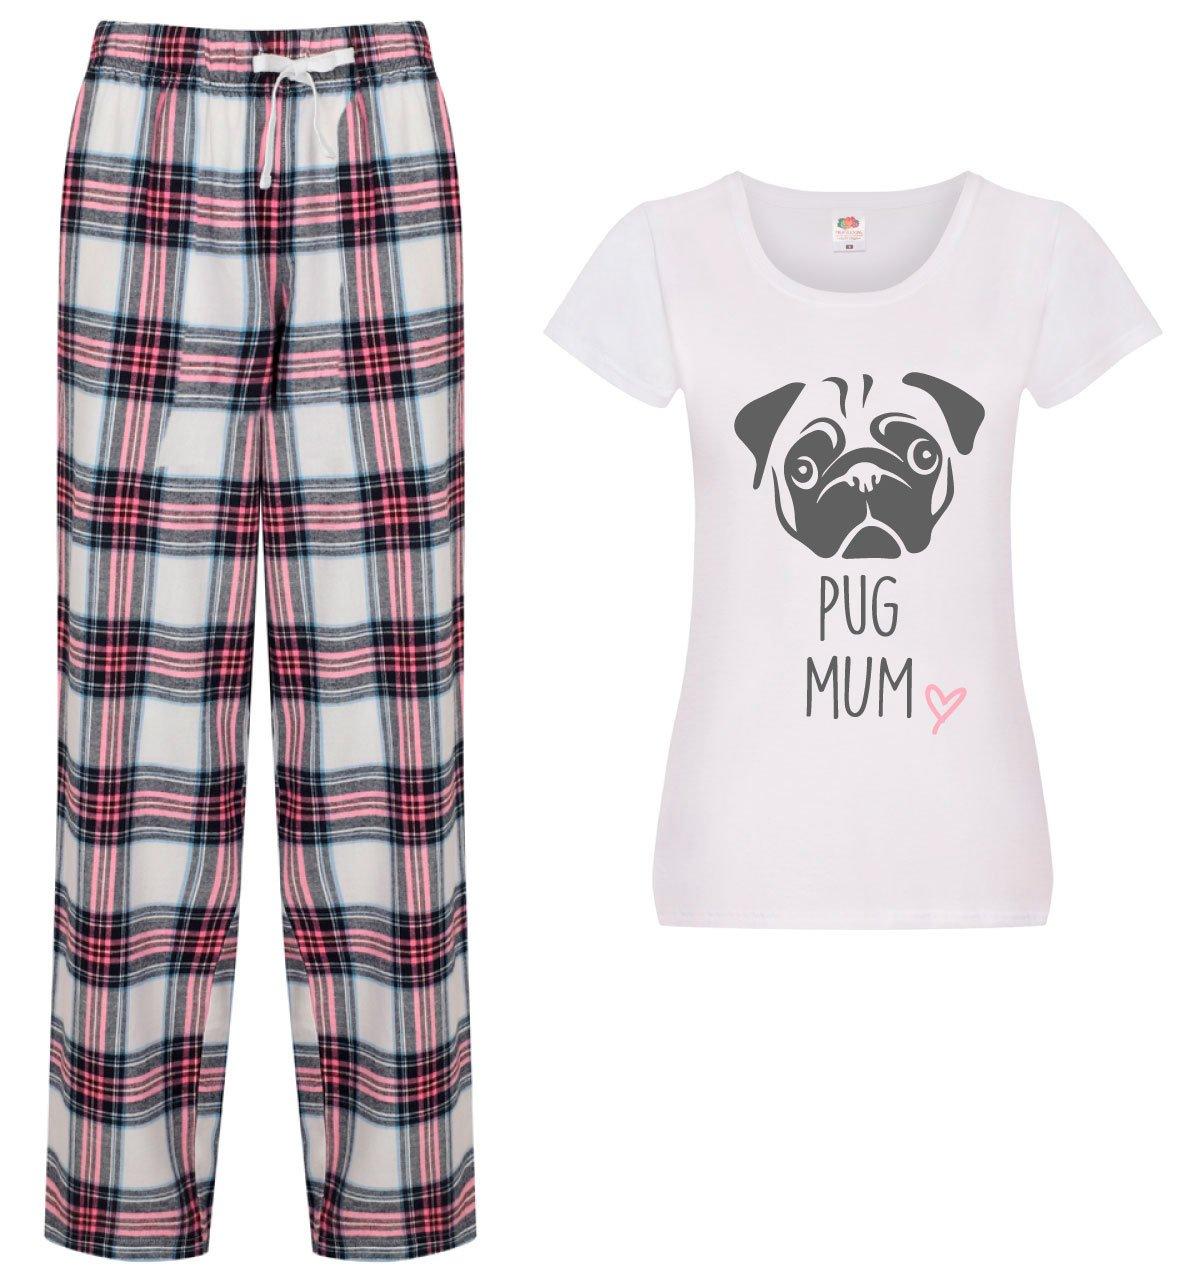 Pug Mum Pyjamas Ladies Tartan Trouser Bottoms Pyjama Dog Pyjamas